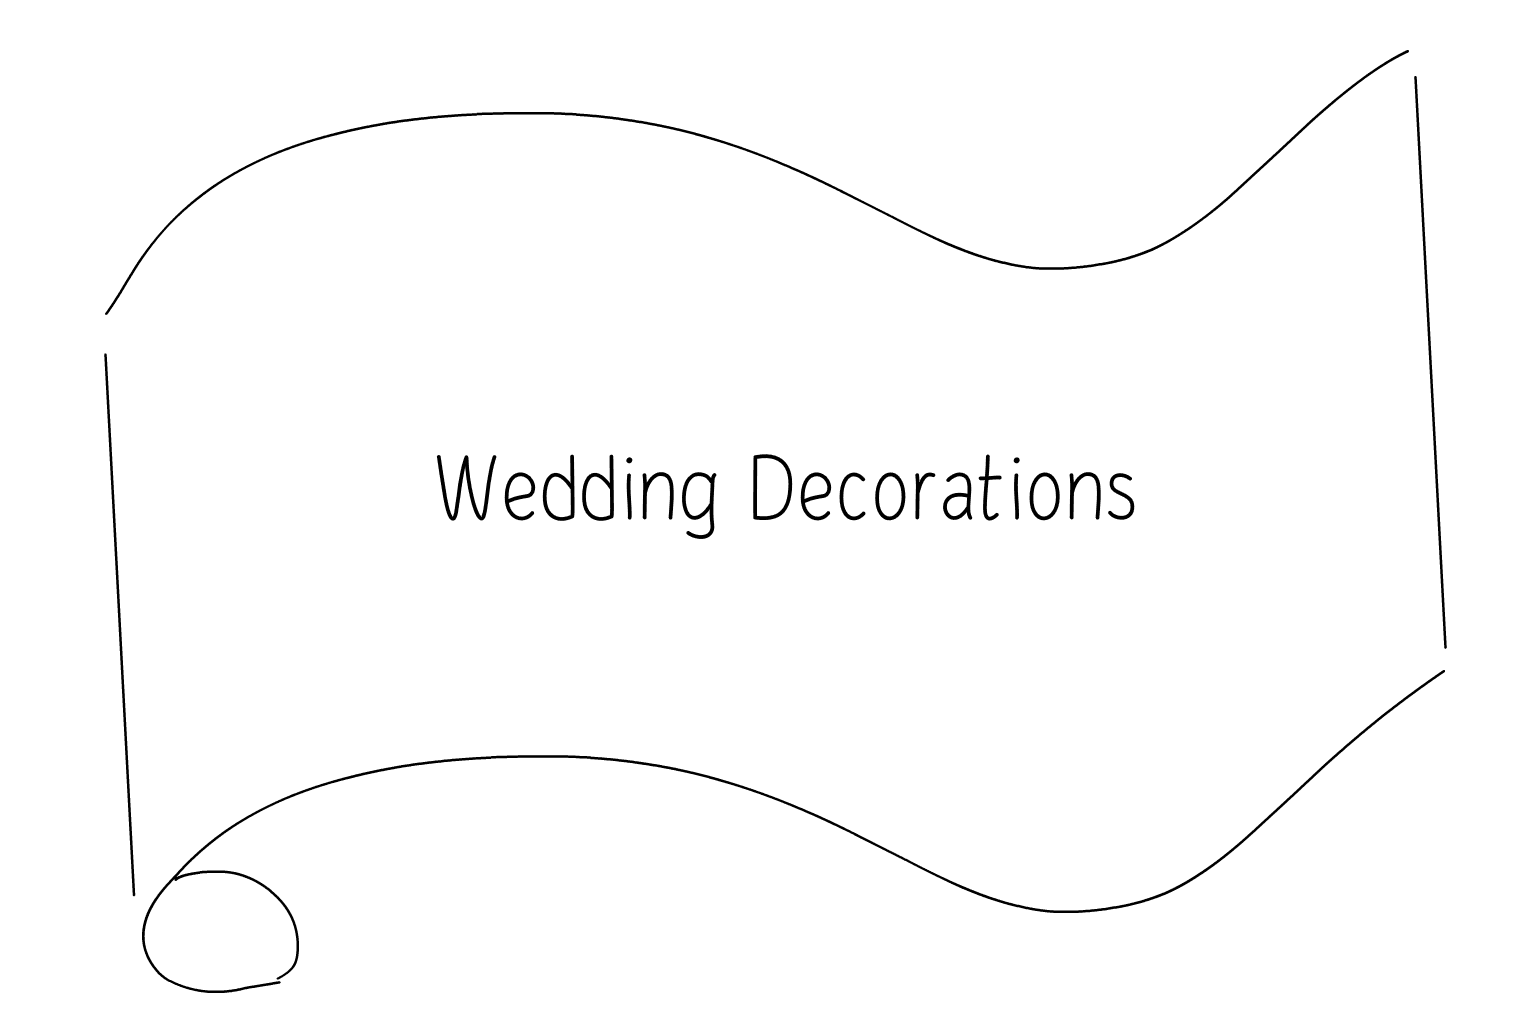 Иллюстрация свадебных украшений